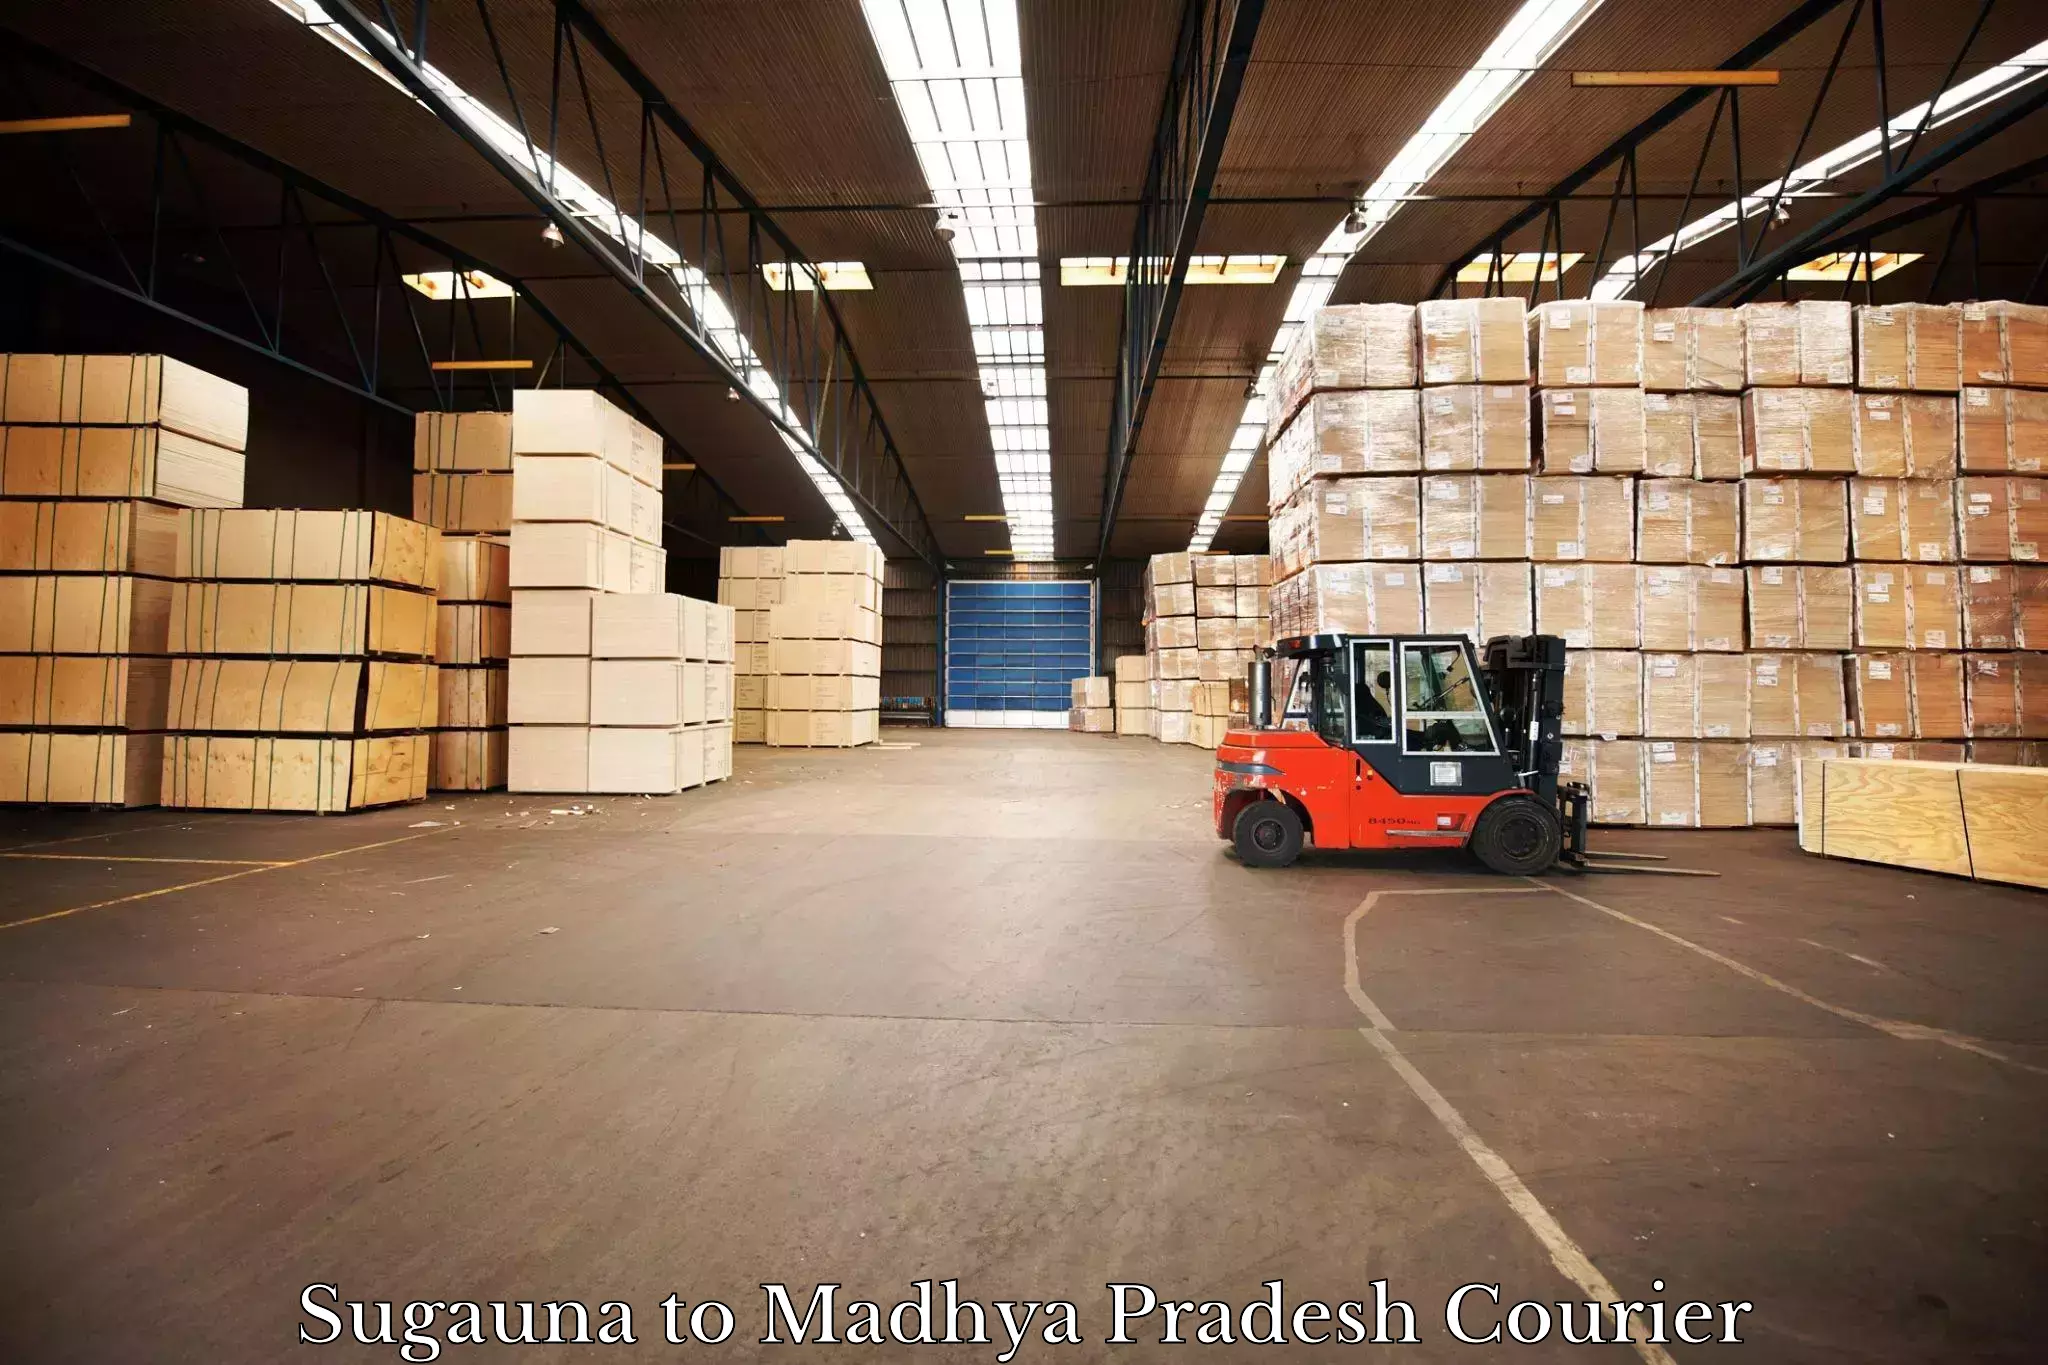 Express delivery capabilities Sugauna to Jaisinghnagar